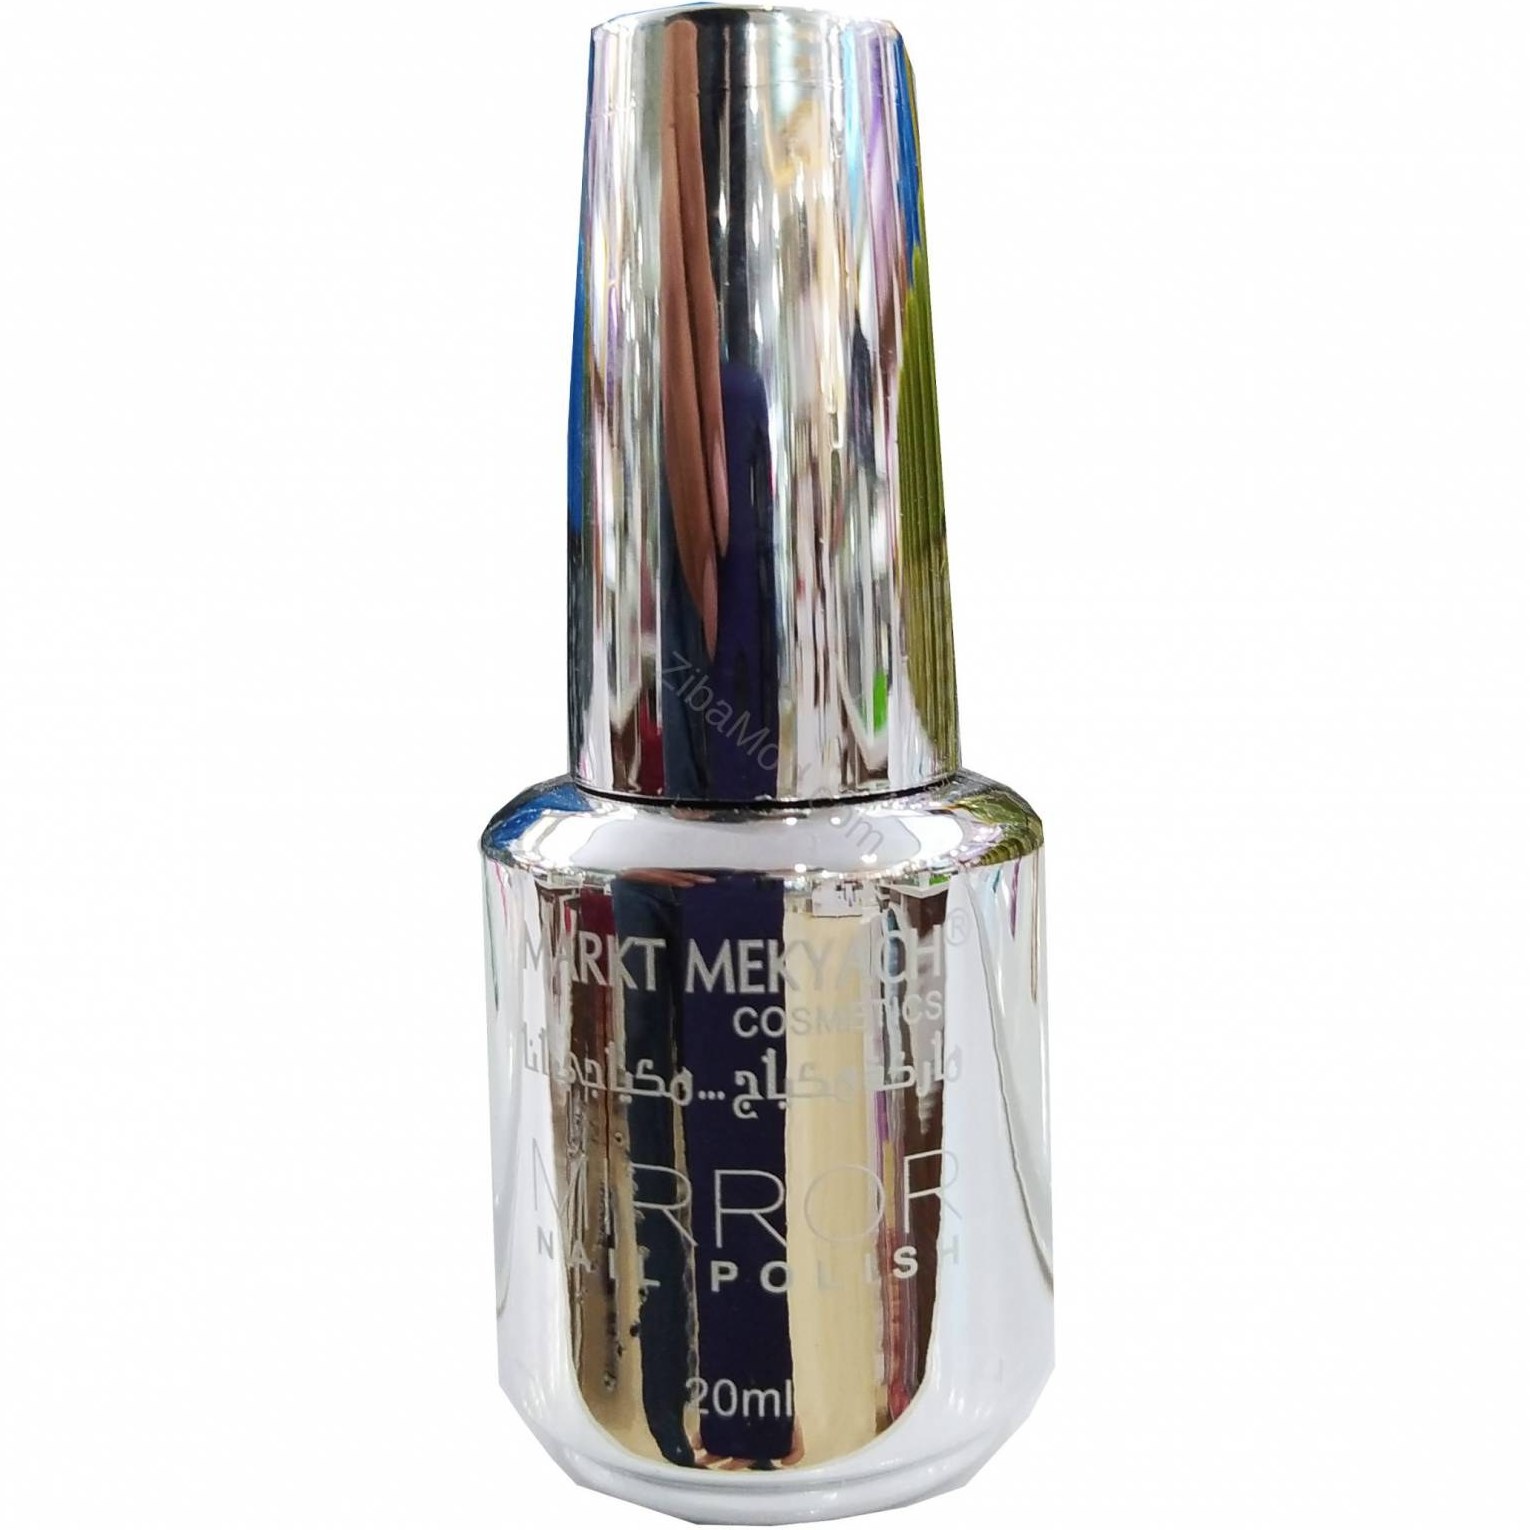 خرید و قیمت لاک ناخن آینه ای MARKT MEKYACH مدل MIRROR رنگ نقره ای ا MARKT  MEKYACH nail polish NUDE Silver | ترب